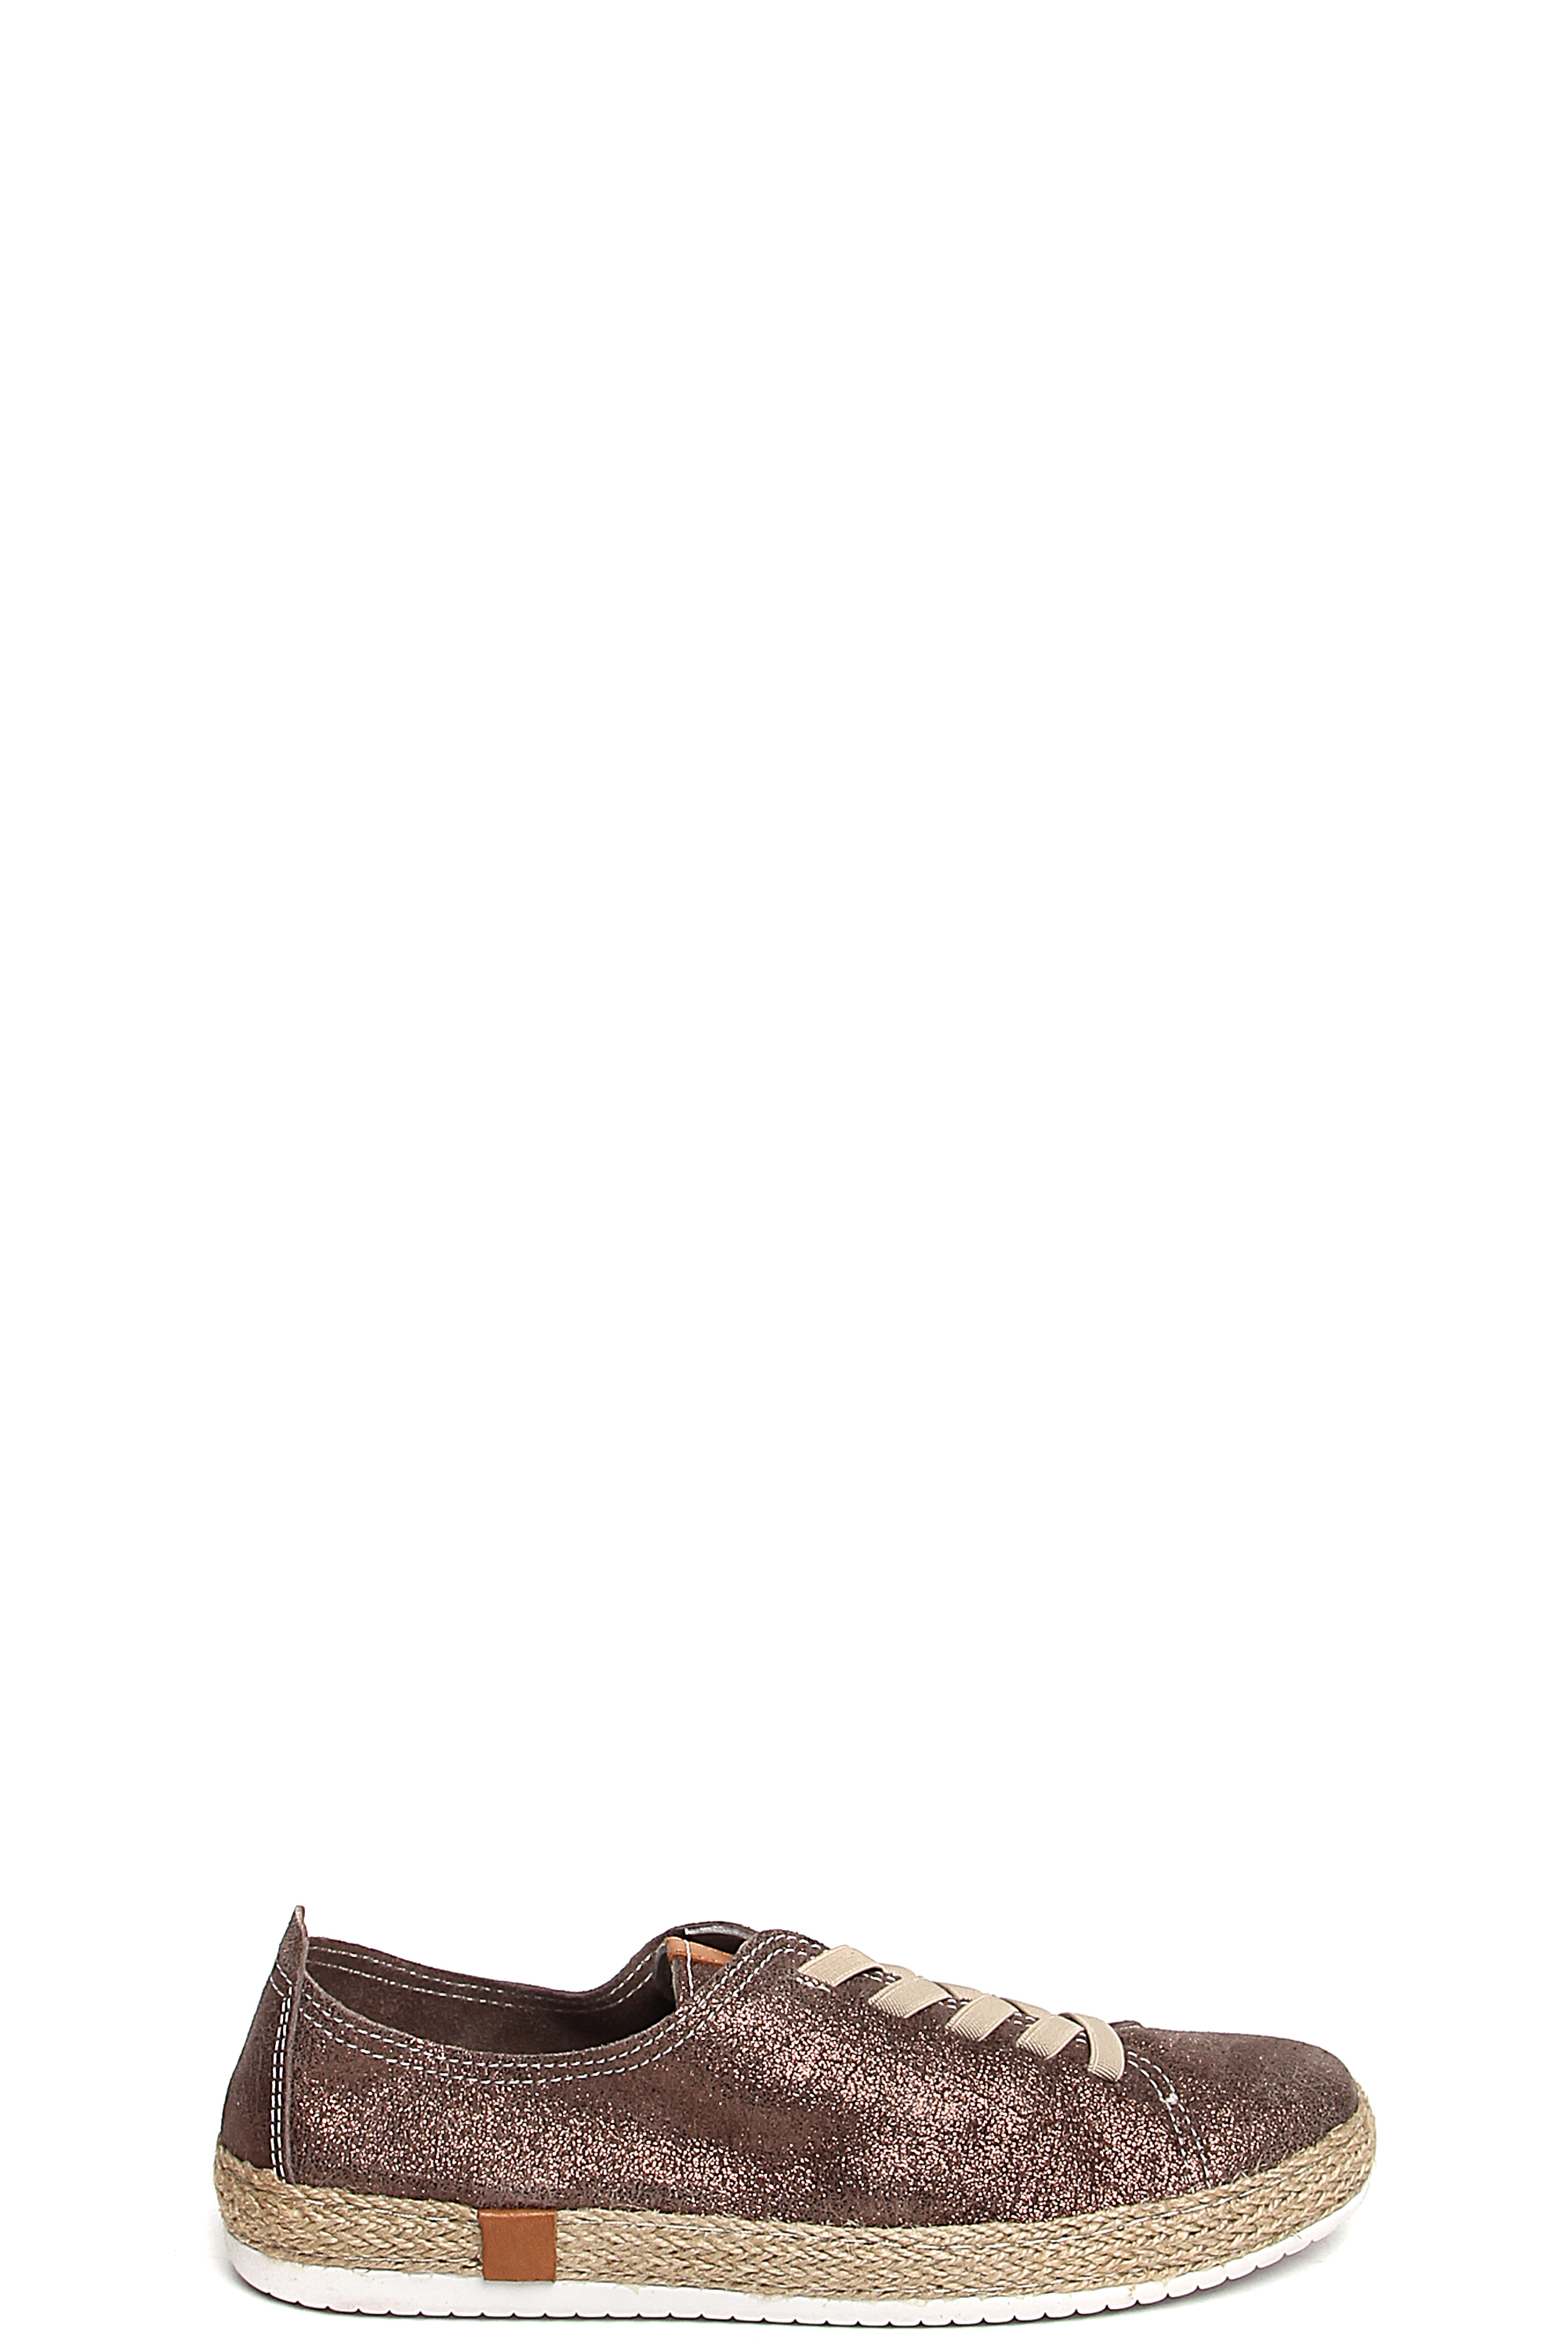 181570-1-1281 полуботинки  взрослый  жен. летн. натуральная кожа (велюр; сотен)/без подкладки/термоэ